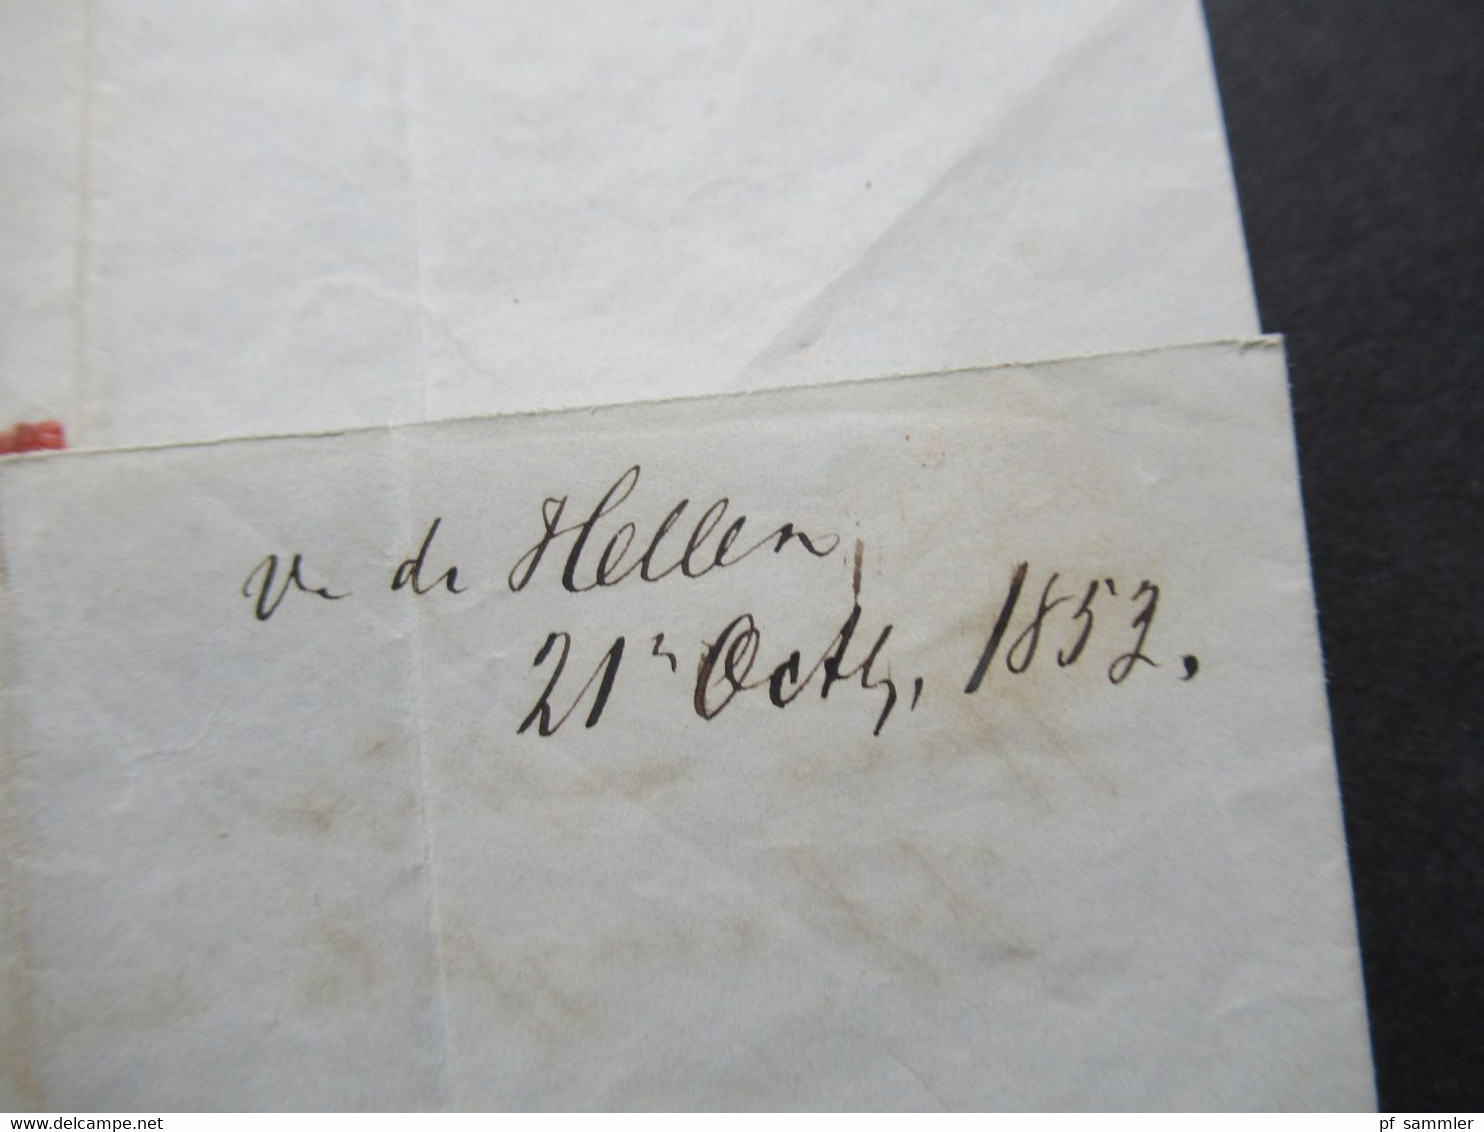 AD Hannover Nr. 2 EF 22.10.1853 breitrandige Marke! Faltbrief mit Inhalt nach Bremen mit blauem L2 Ank. Stempel Bremen